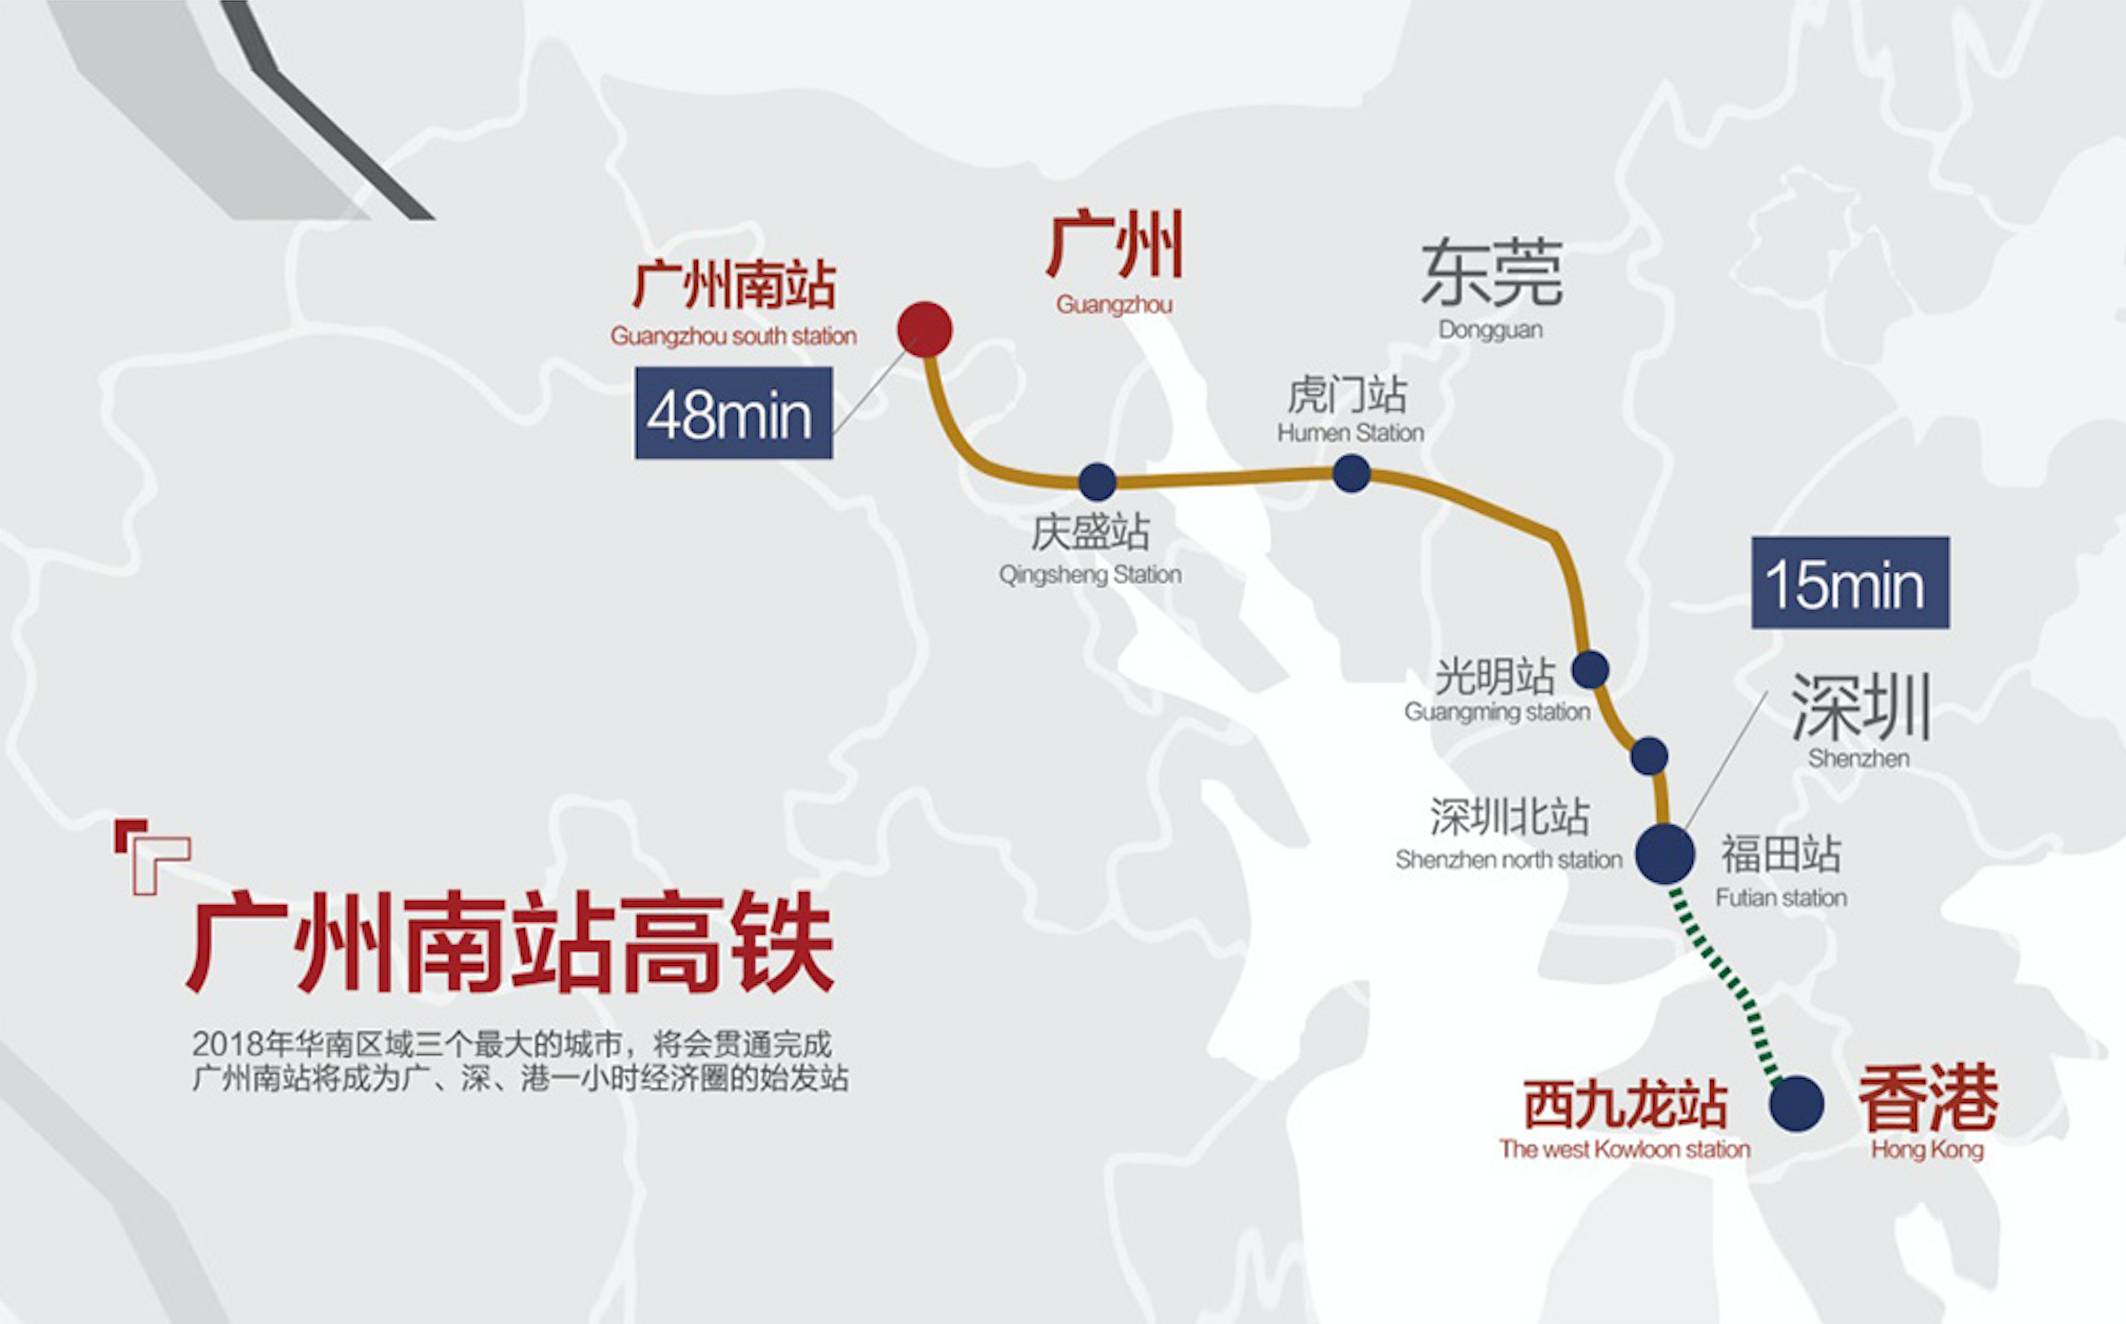 广深港高铁开通 深港合作按下“快进键” - 中美创新时报